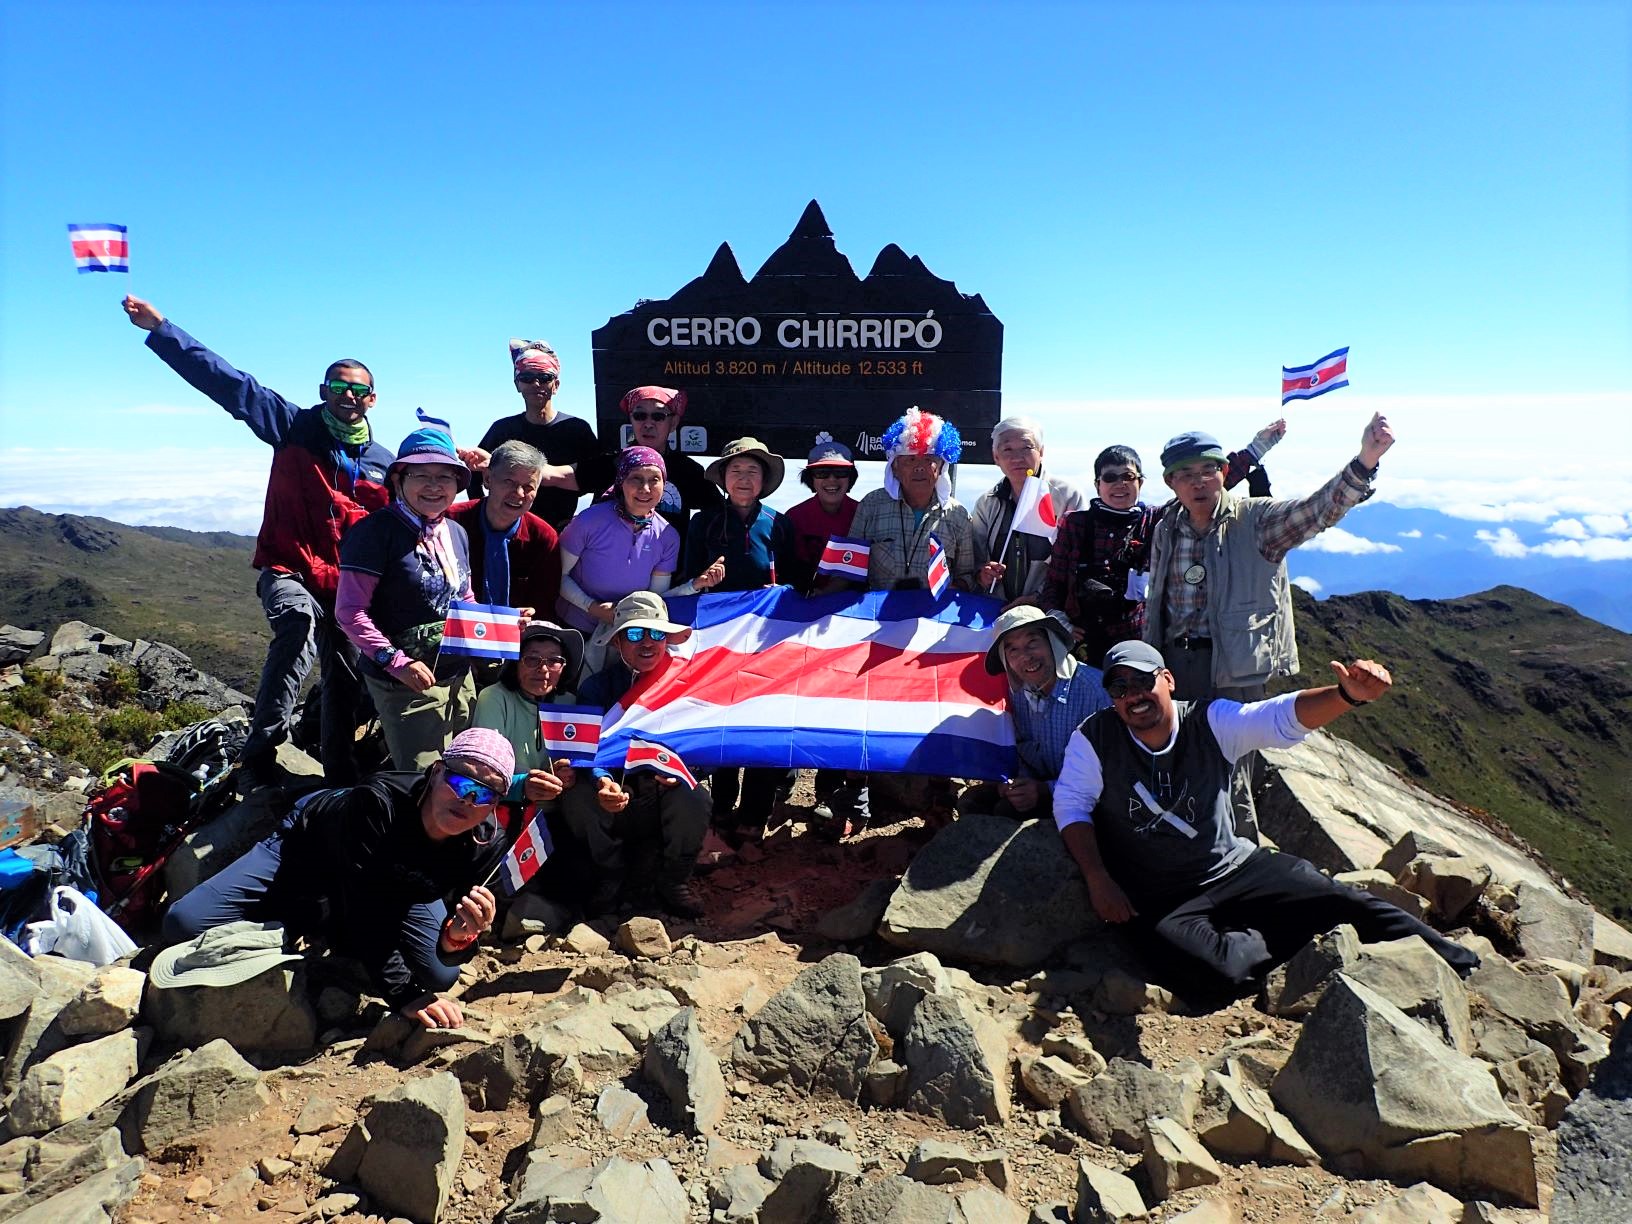 2月9日出発「コスタリカ最高峰チリポ山登頂と 幻の鳥ケツァールを求めて 11日間」